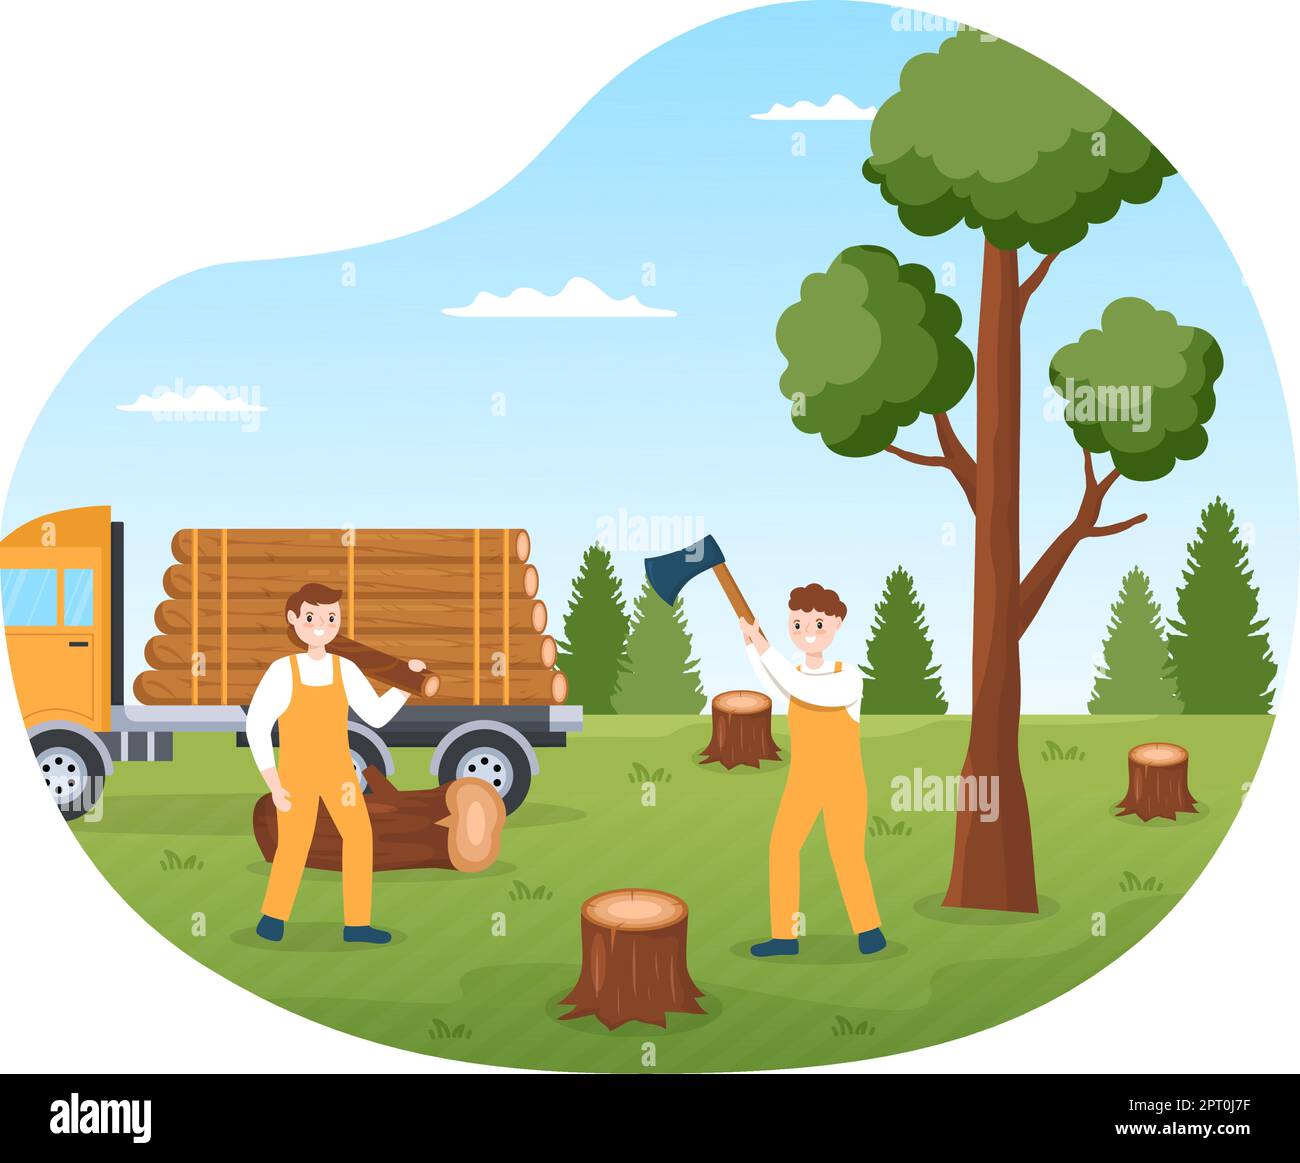 Ilustración de registro de árbol marrón, ilustración de dibujos animados de  tocón de árbol, tocón de árbol, mueble, raíz, madera png